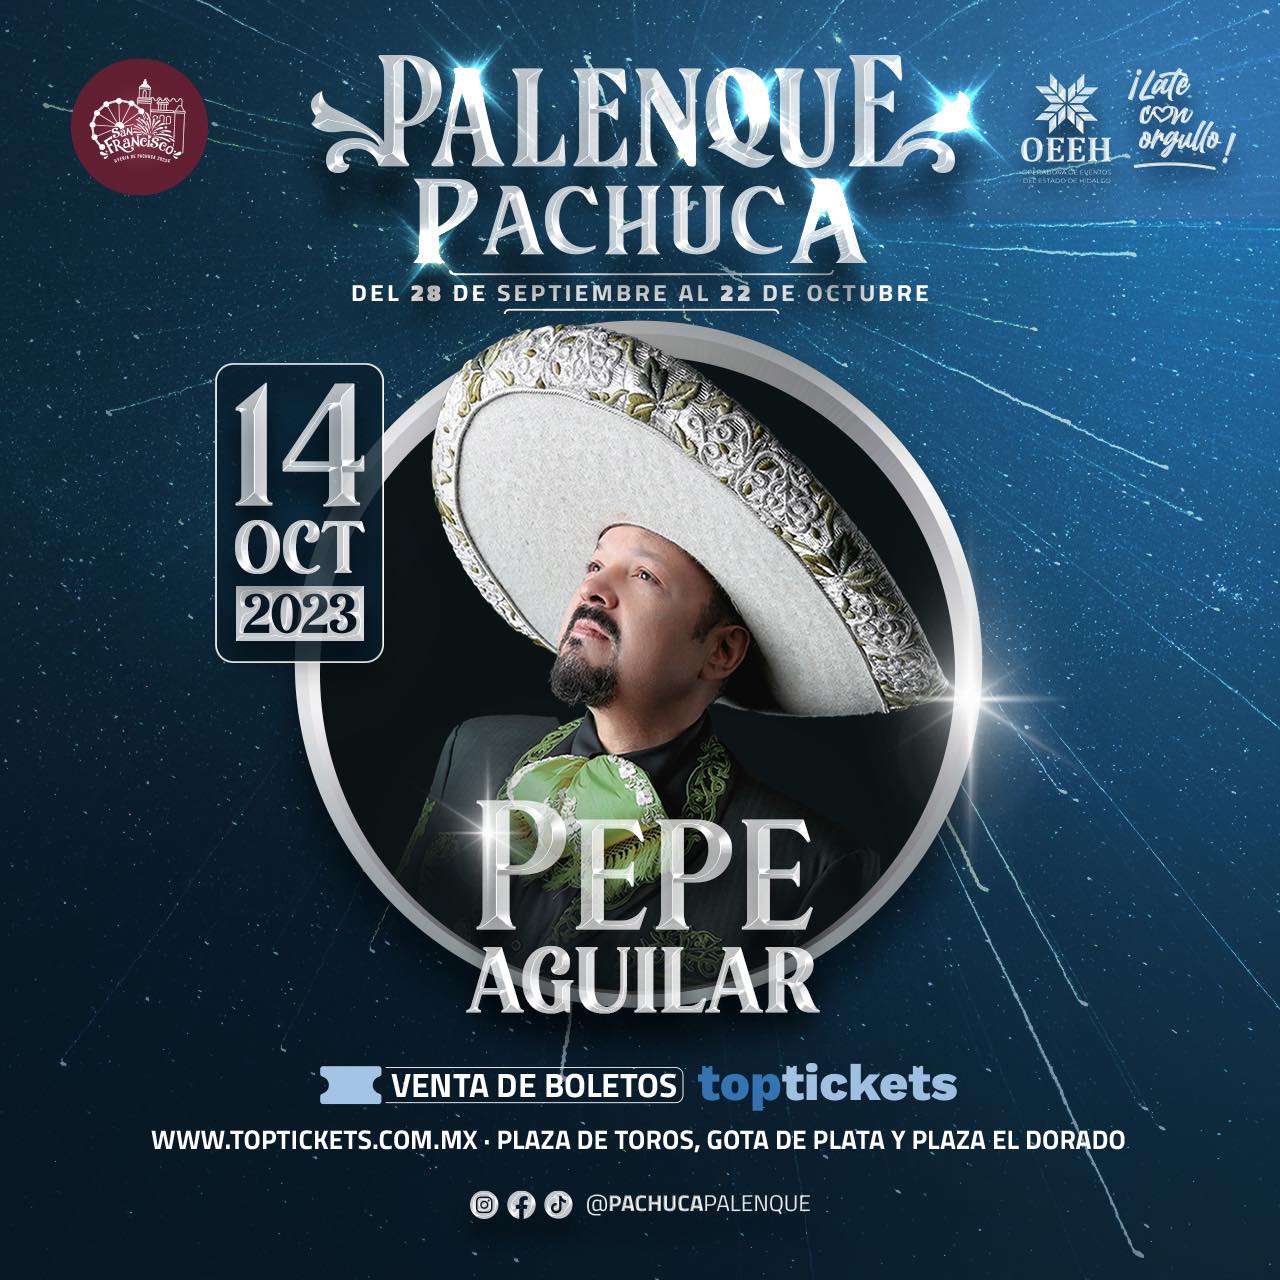 boletos pepe aguilar palenque pachuca 2023